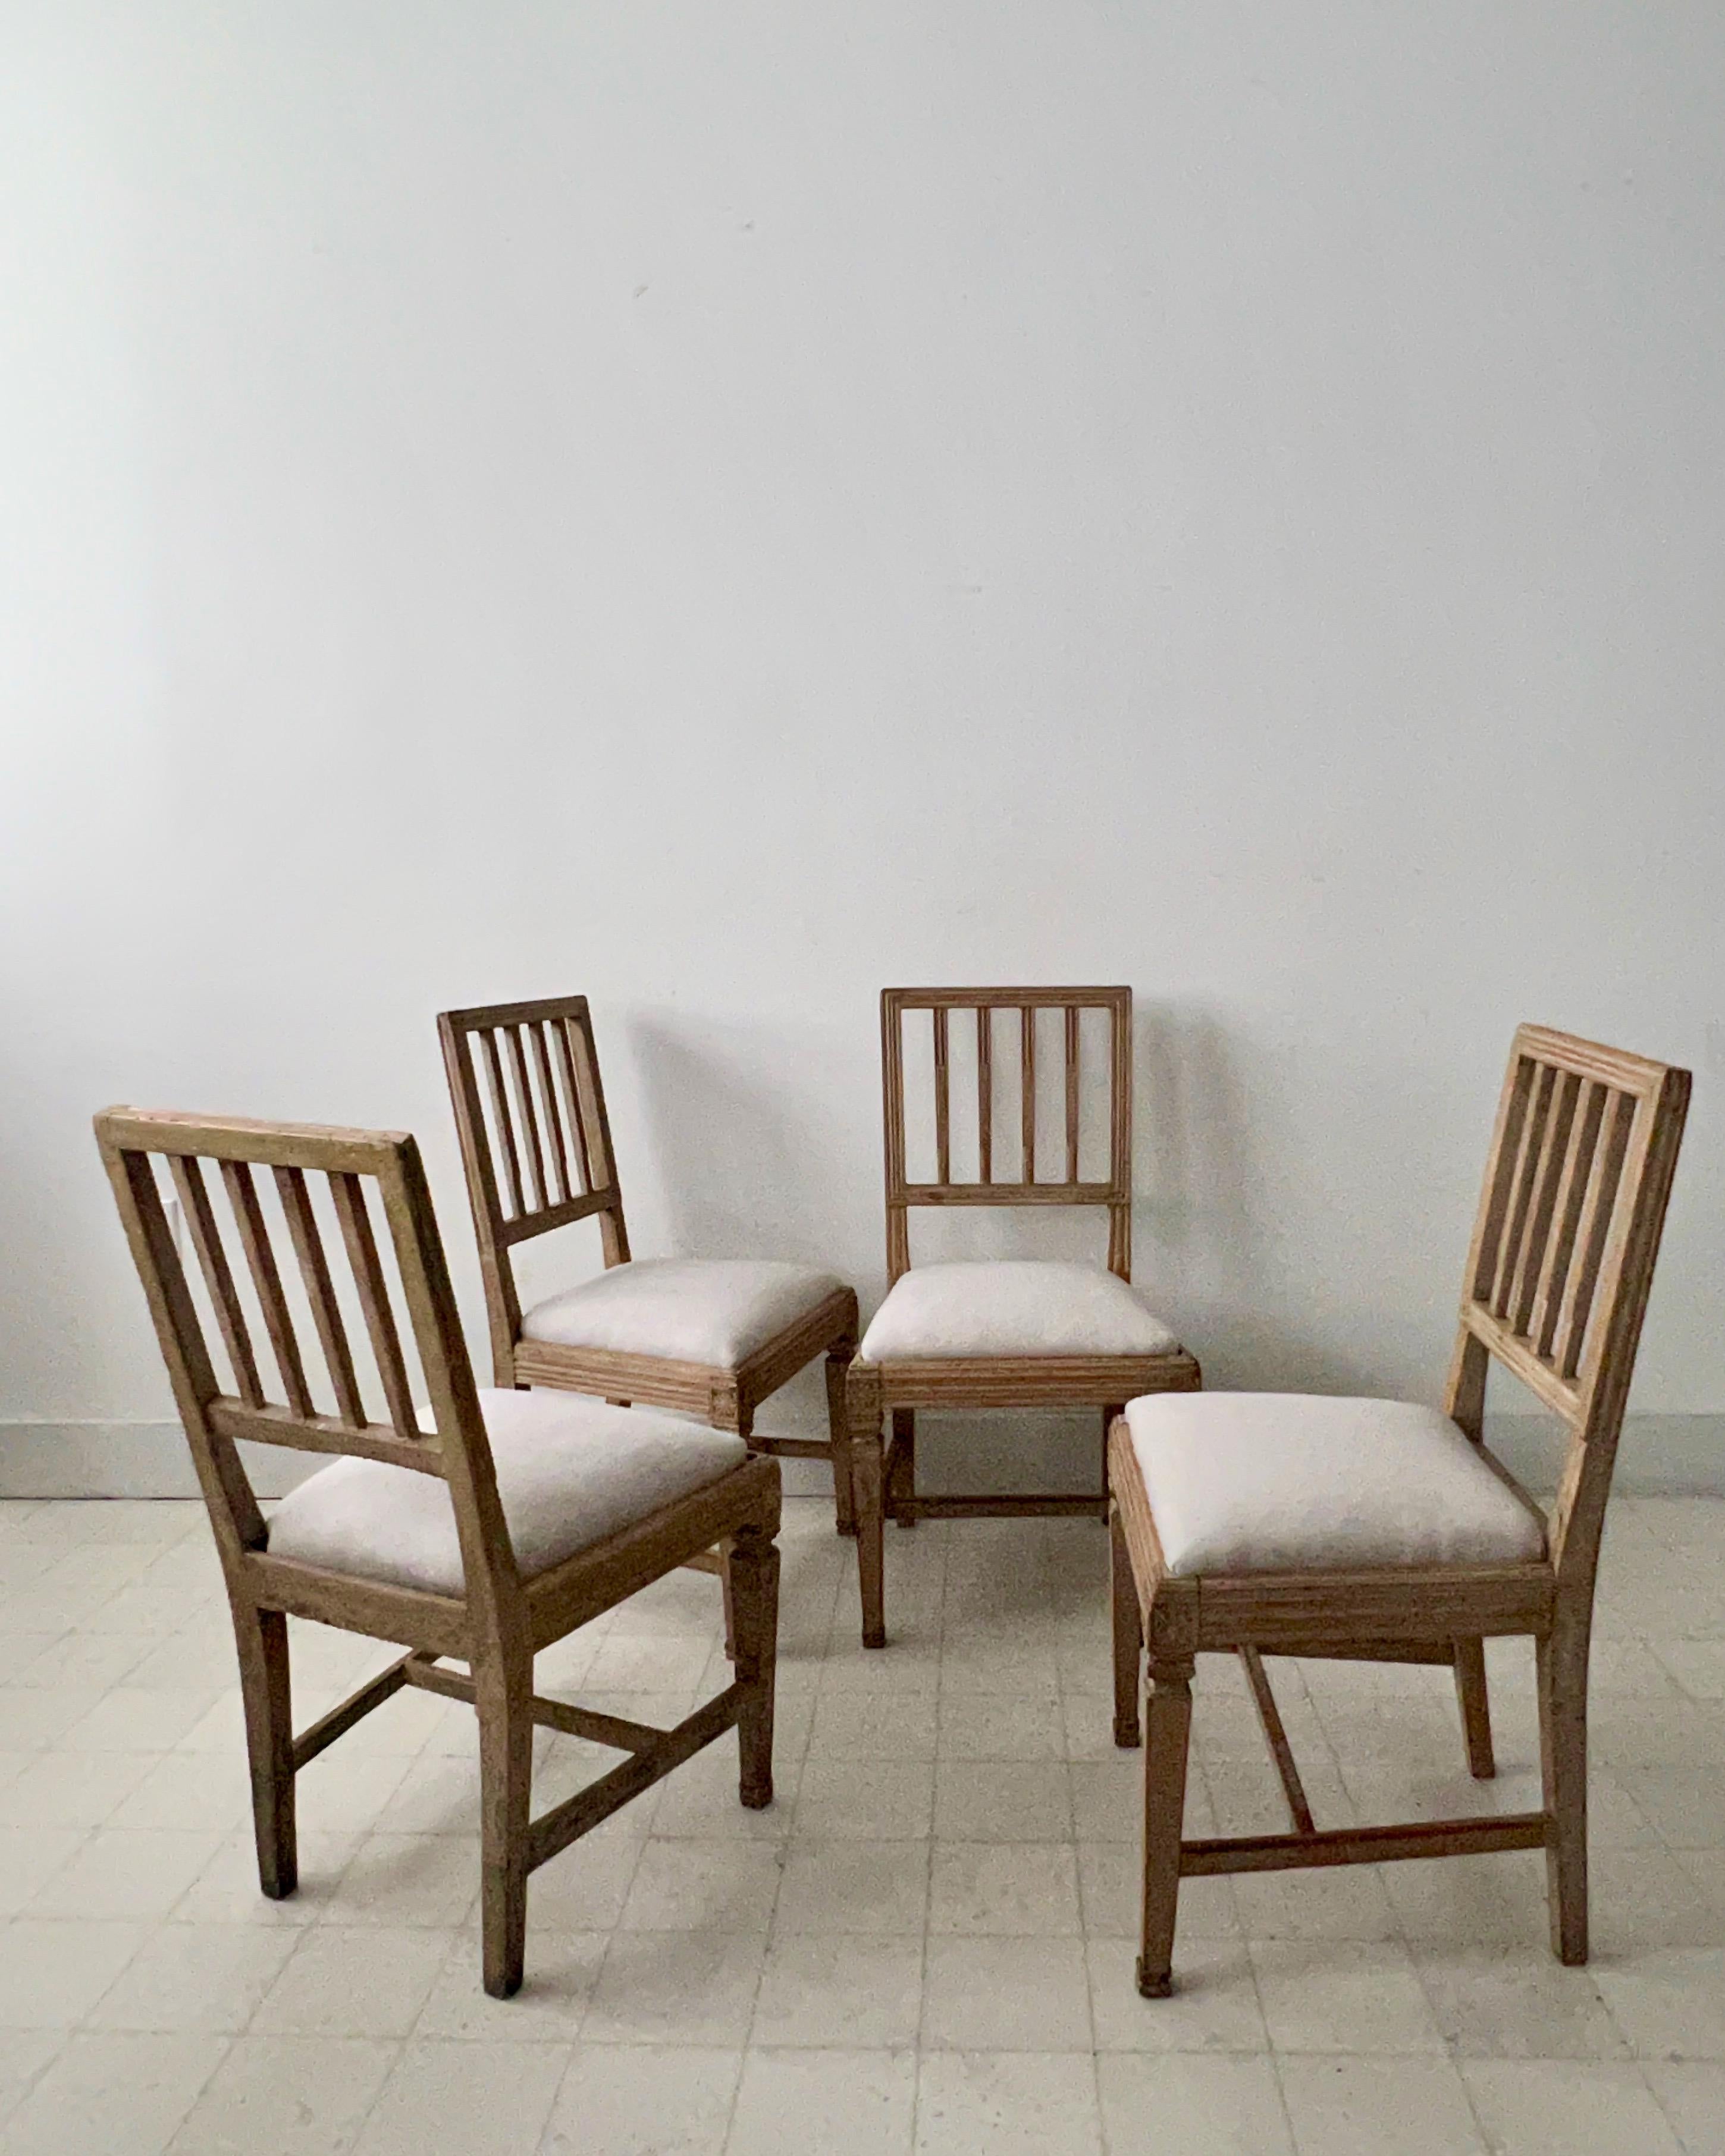 Familie von vier Stühlen der Volkskunst aus dem 18. Jahrhundert, Modell Leksand, mit Originalpatina und neu bezogenen Leinenpolstern.
Hinweis: Ein Stuhl unterscheidet sich geringfügig - bitte sehen Sie die zusätzlichen Fotos
Stühle aus der